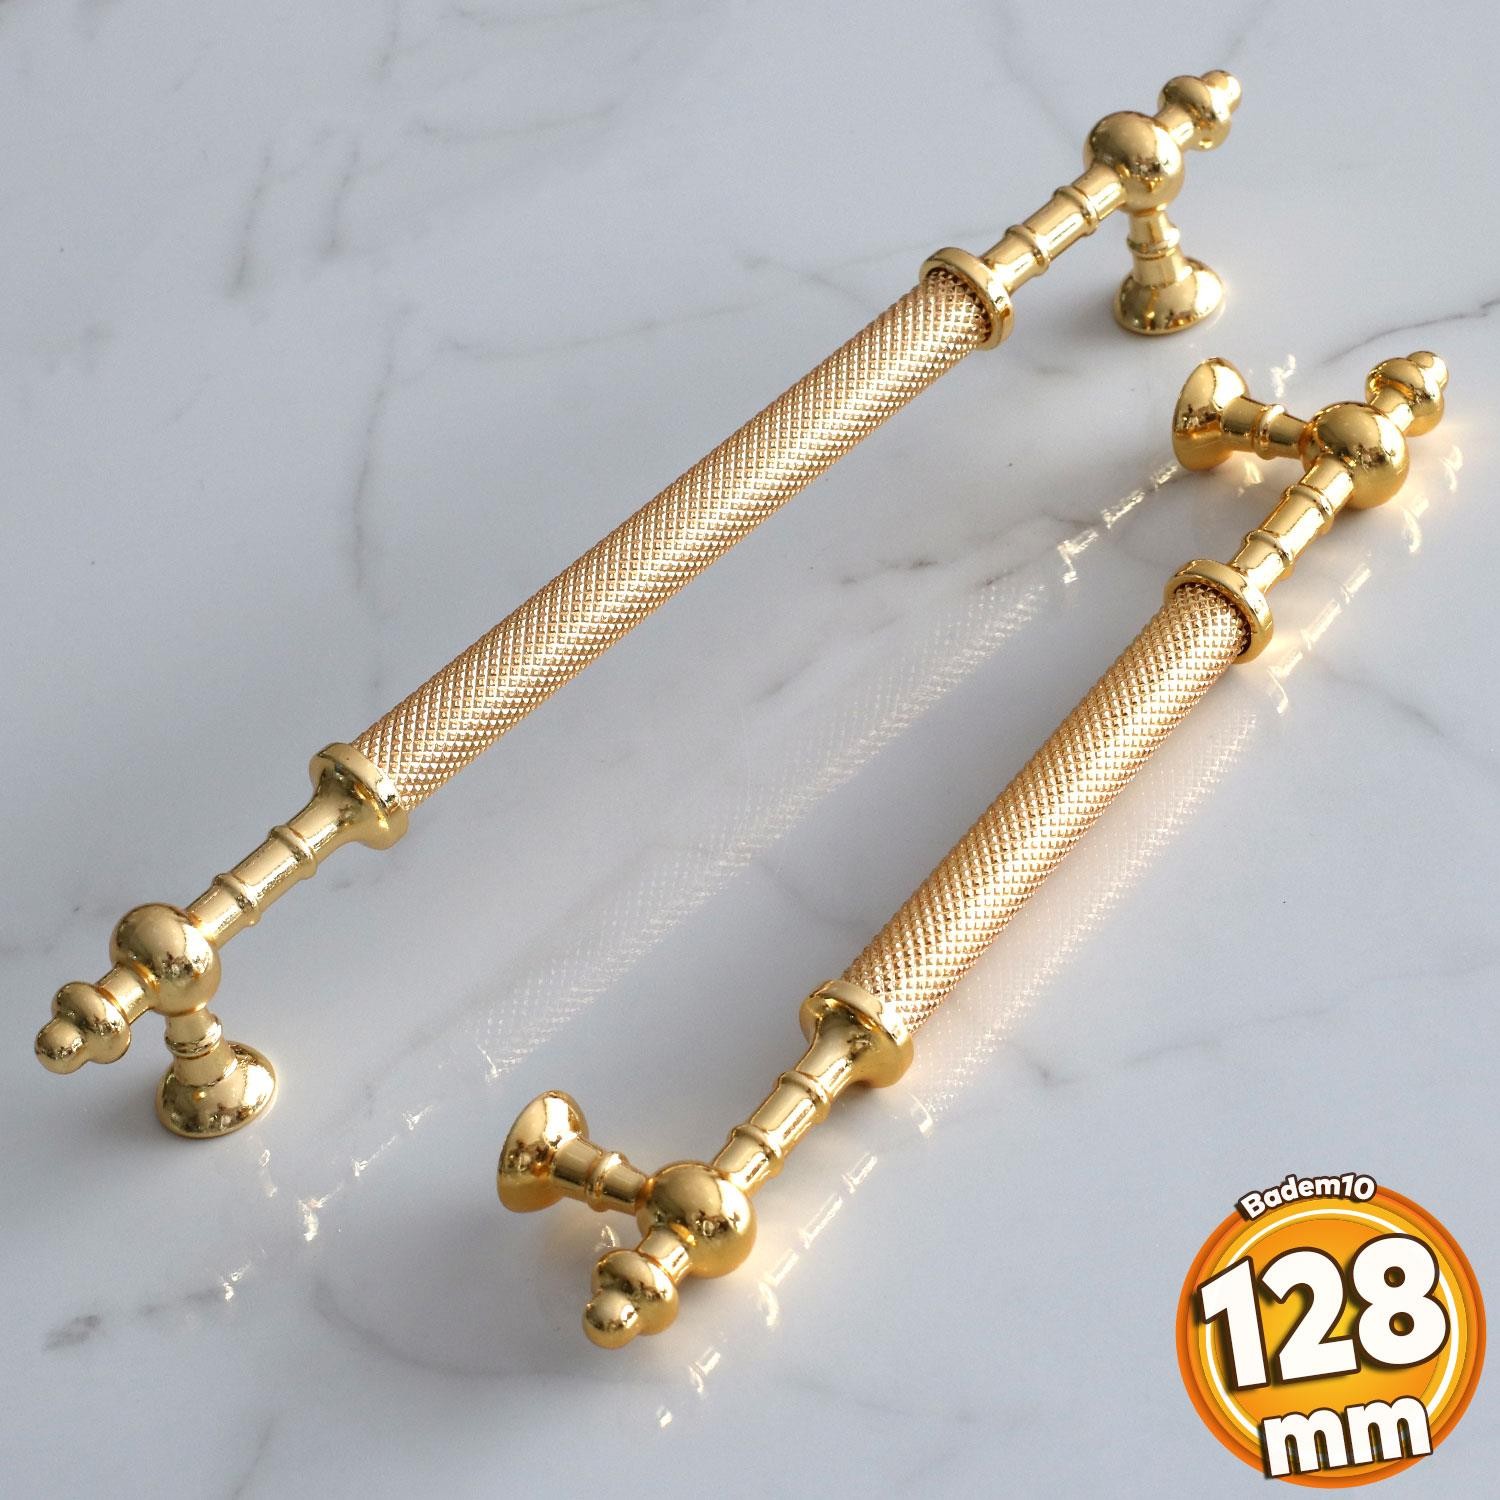 Ladin Altın Gold Metal Kulp 128 mm-12.8 cm Mobilya Çekmece Mutfak Dolabı Dolap Kapak Kulpları Kulbu